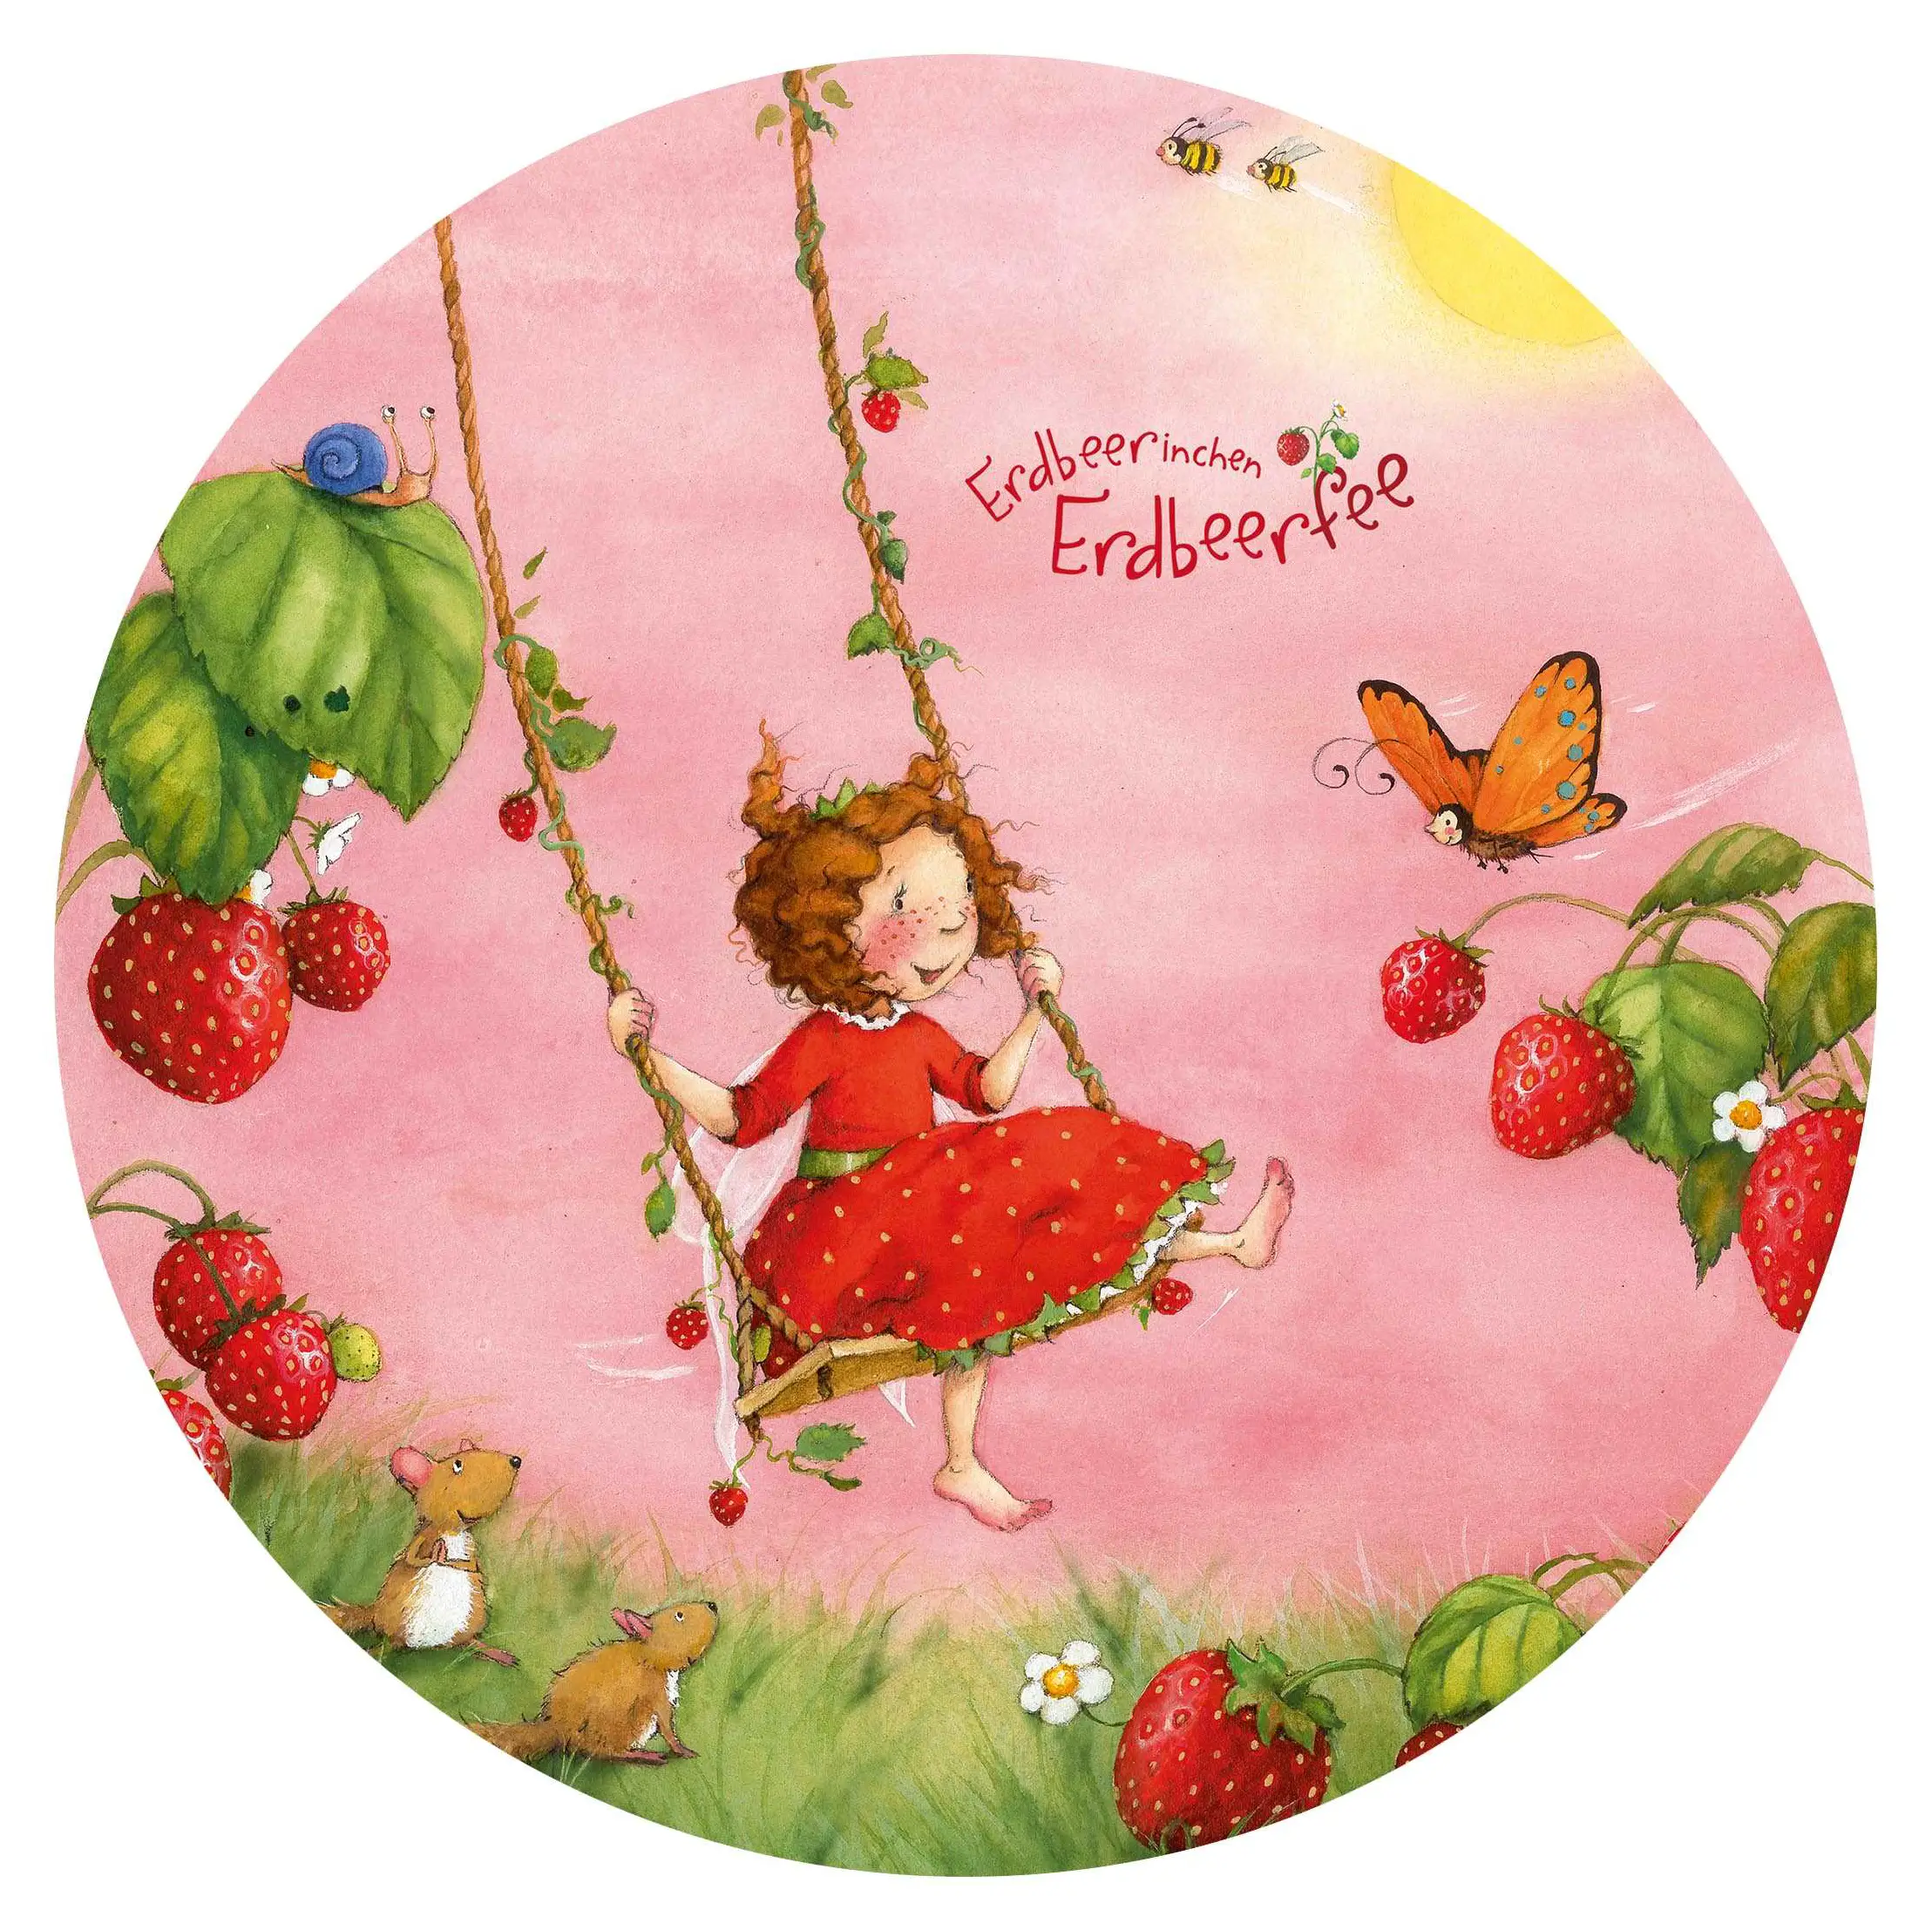 Erdbeerinchen Erdbeerfee - Baumschaukel